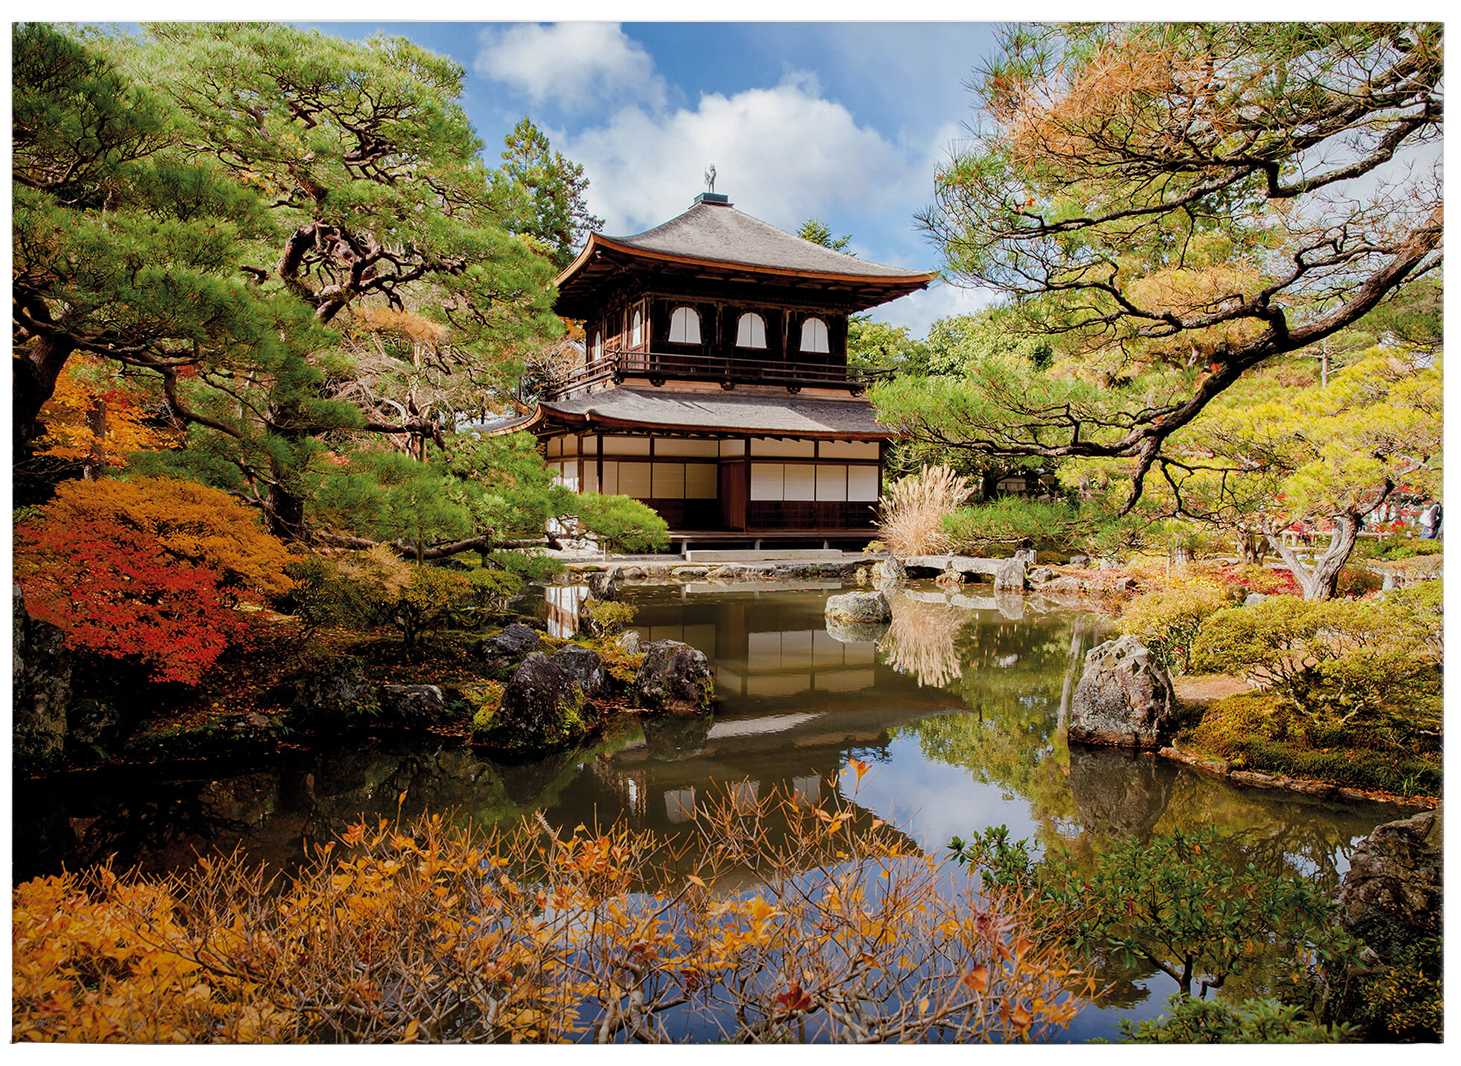             Toile Jardin japonais avec pagode - 0,70 m x 0,50 m
        